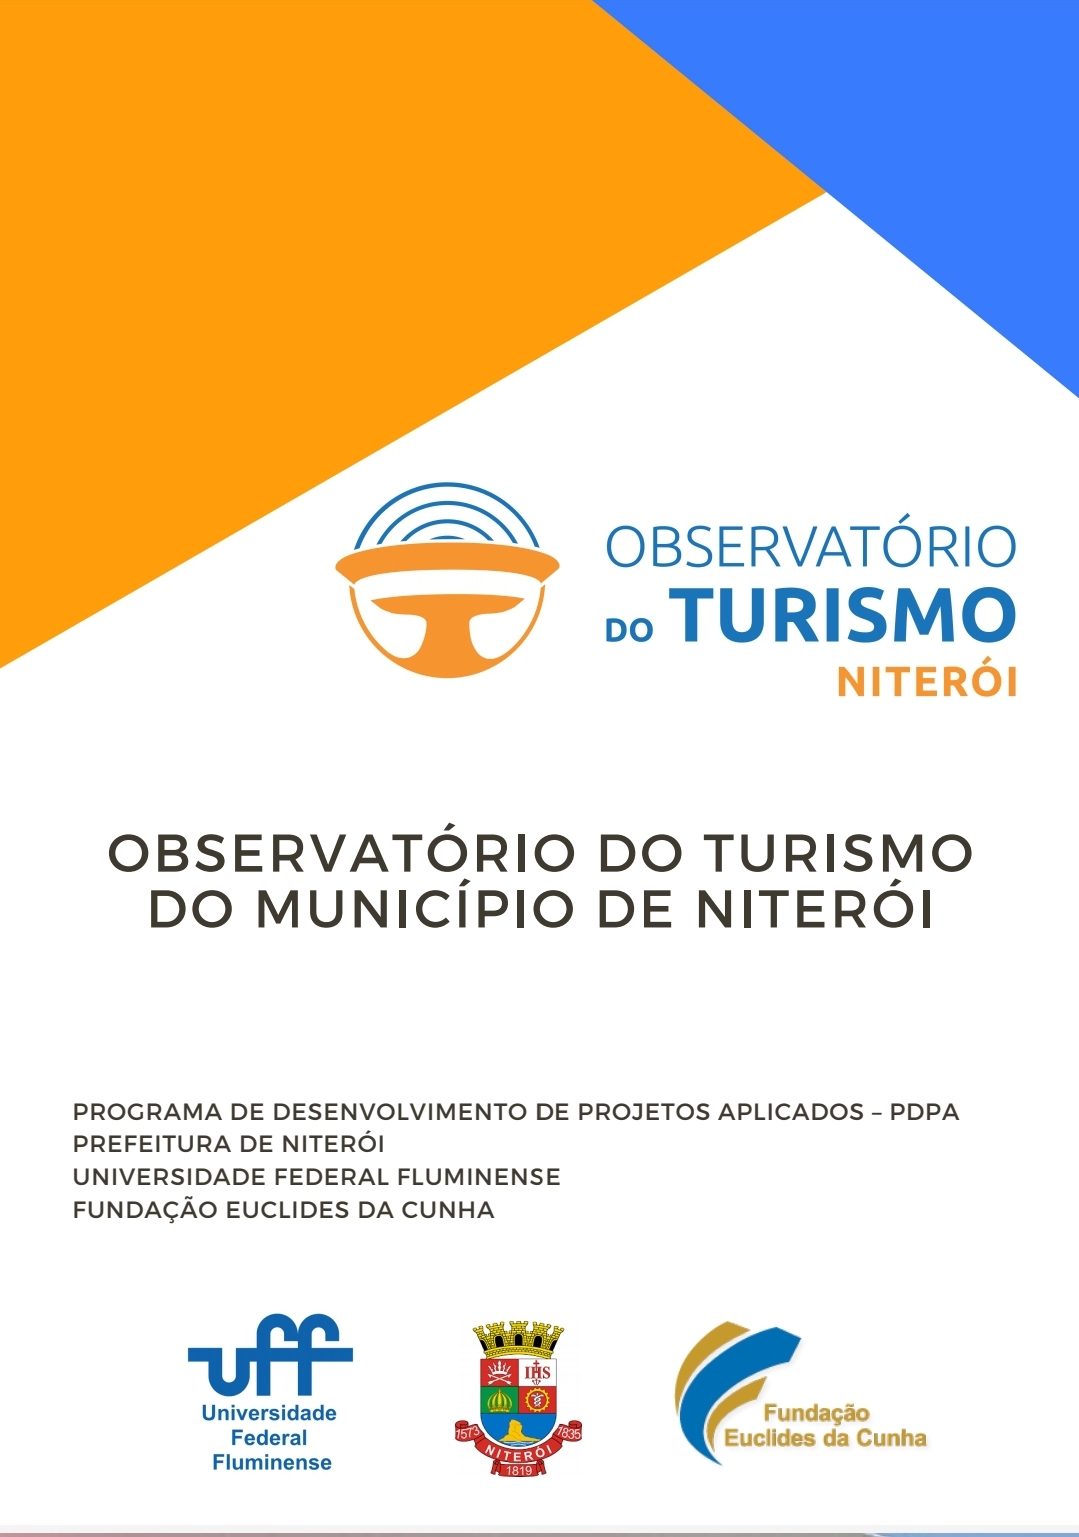 Observatório de Turismo do Município de Niterói